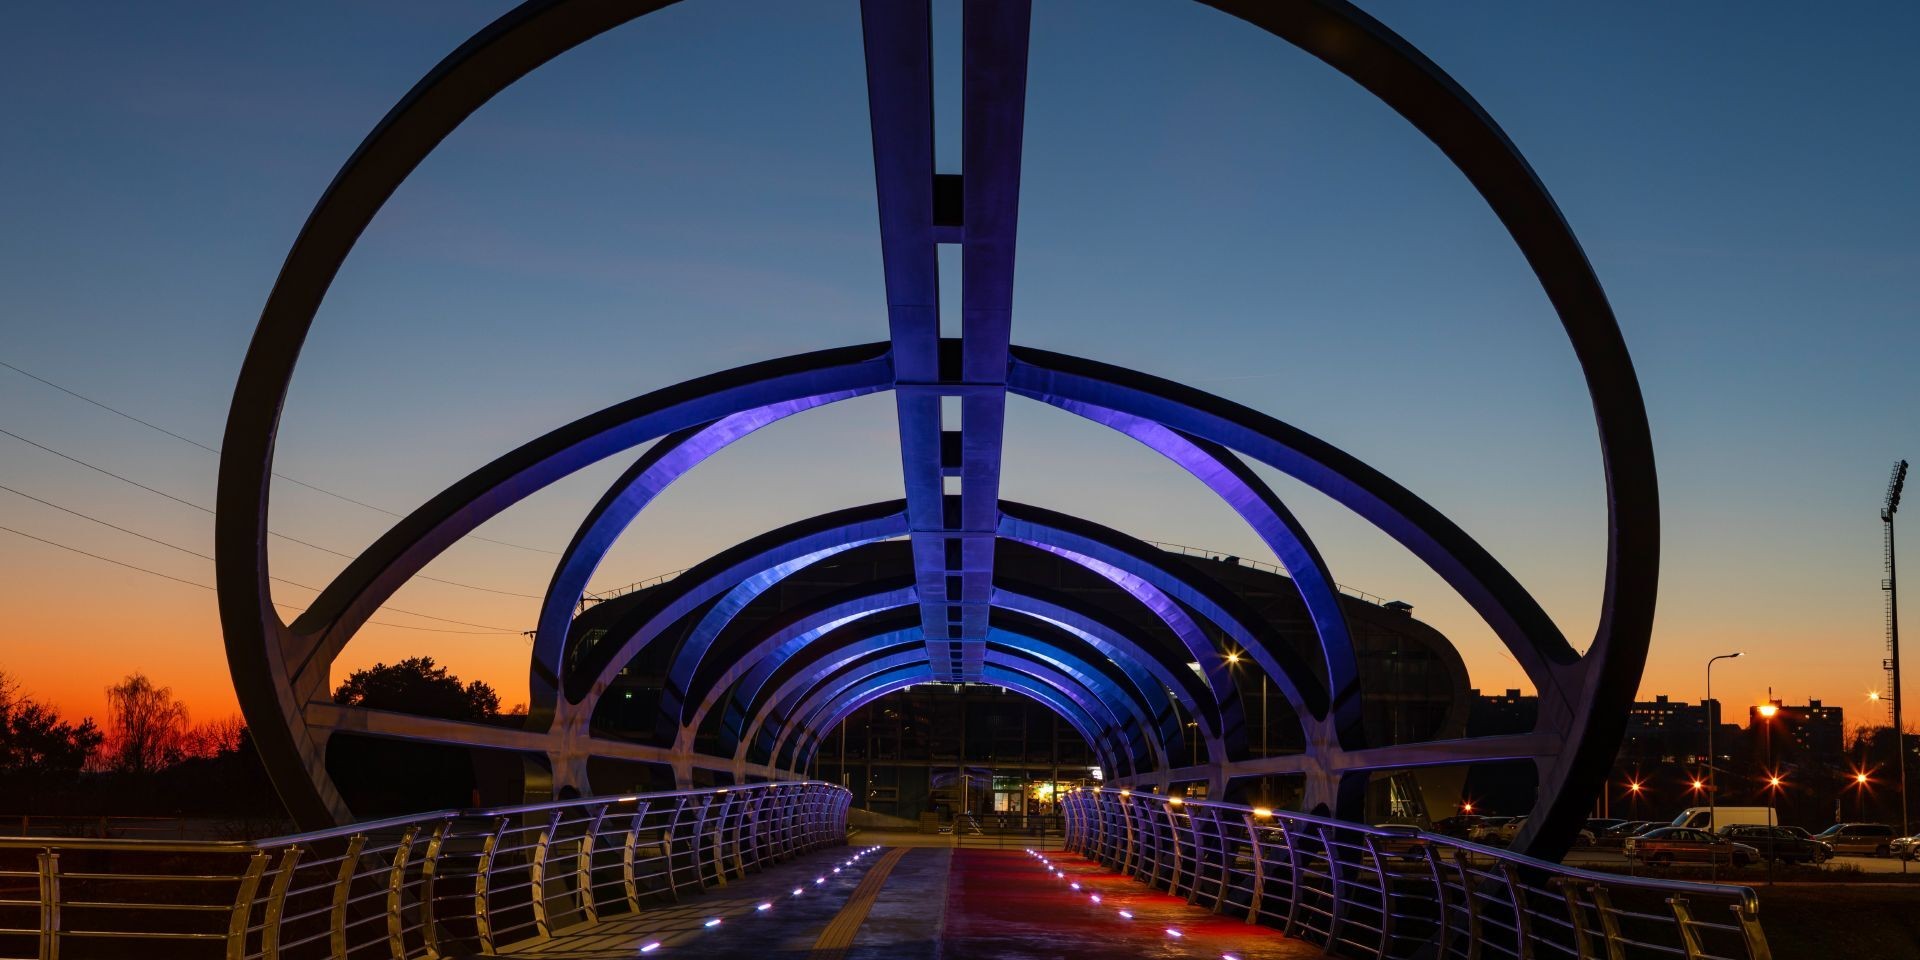 Tyylikäs ja värikäs kevyenliikenteen silta herättää huomiota futuristisella muodollaan.